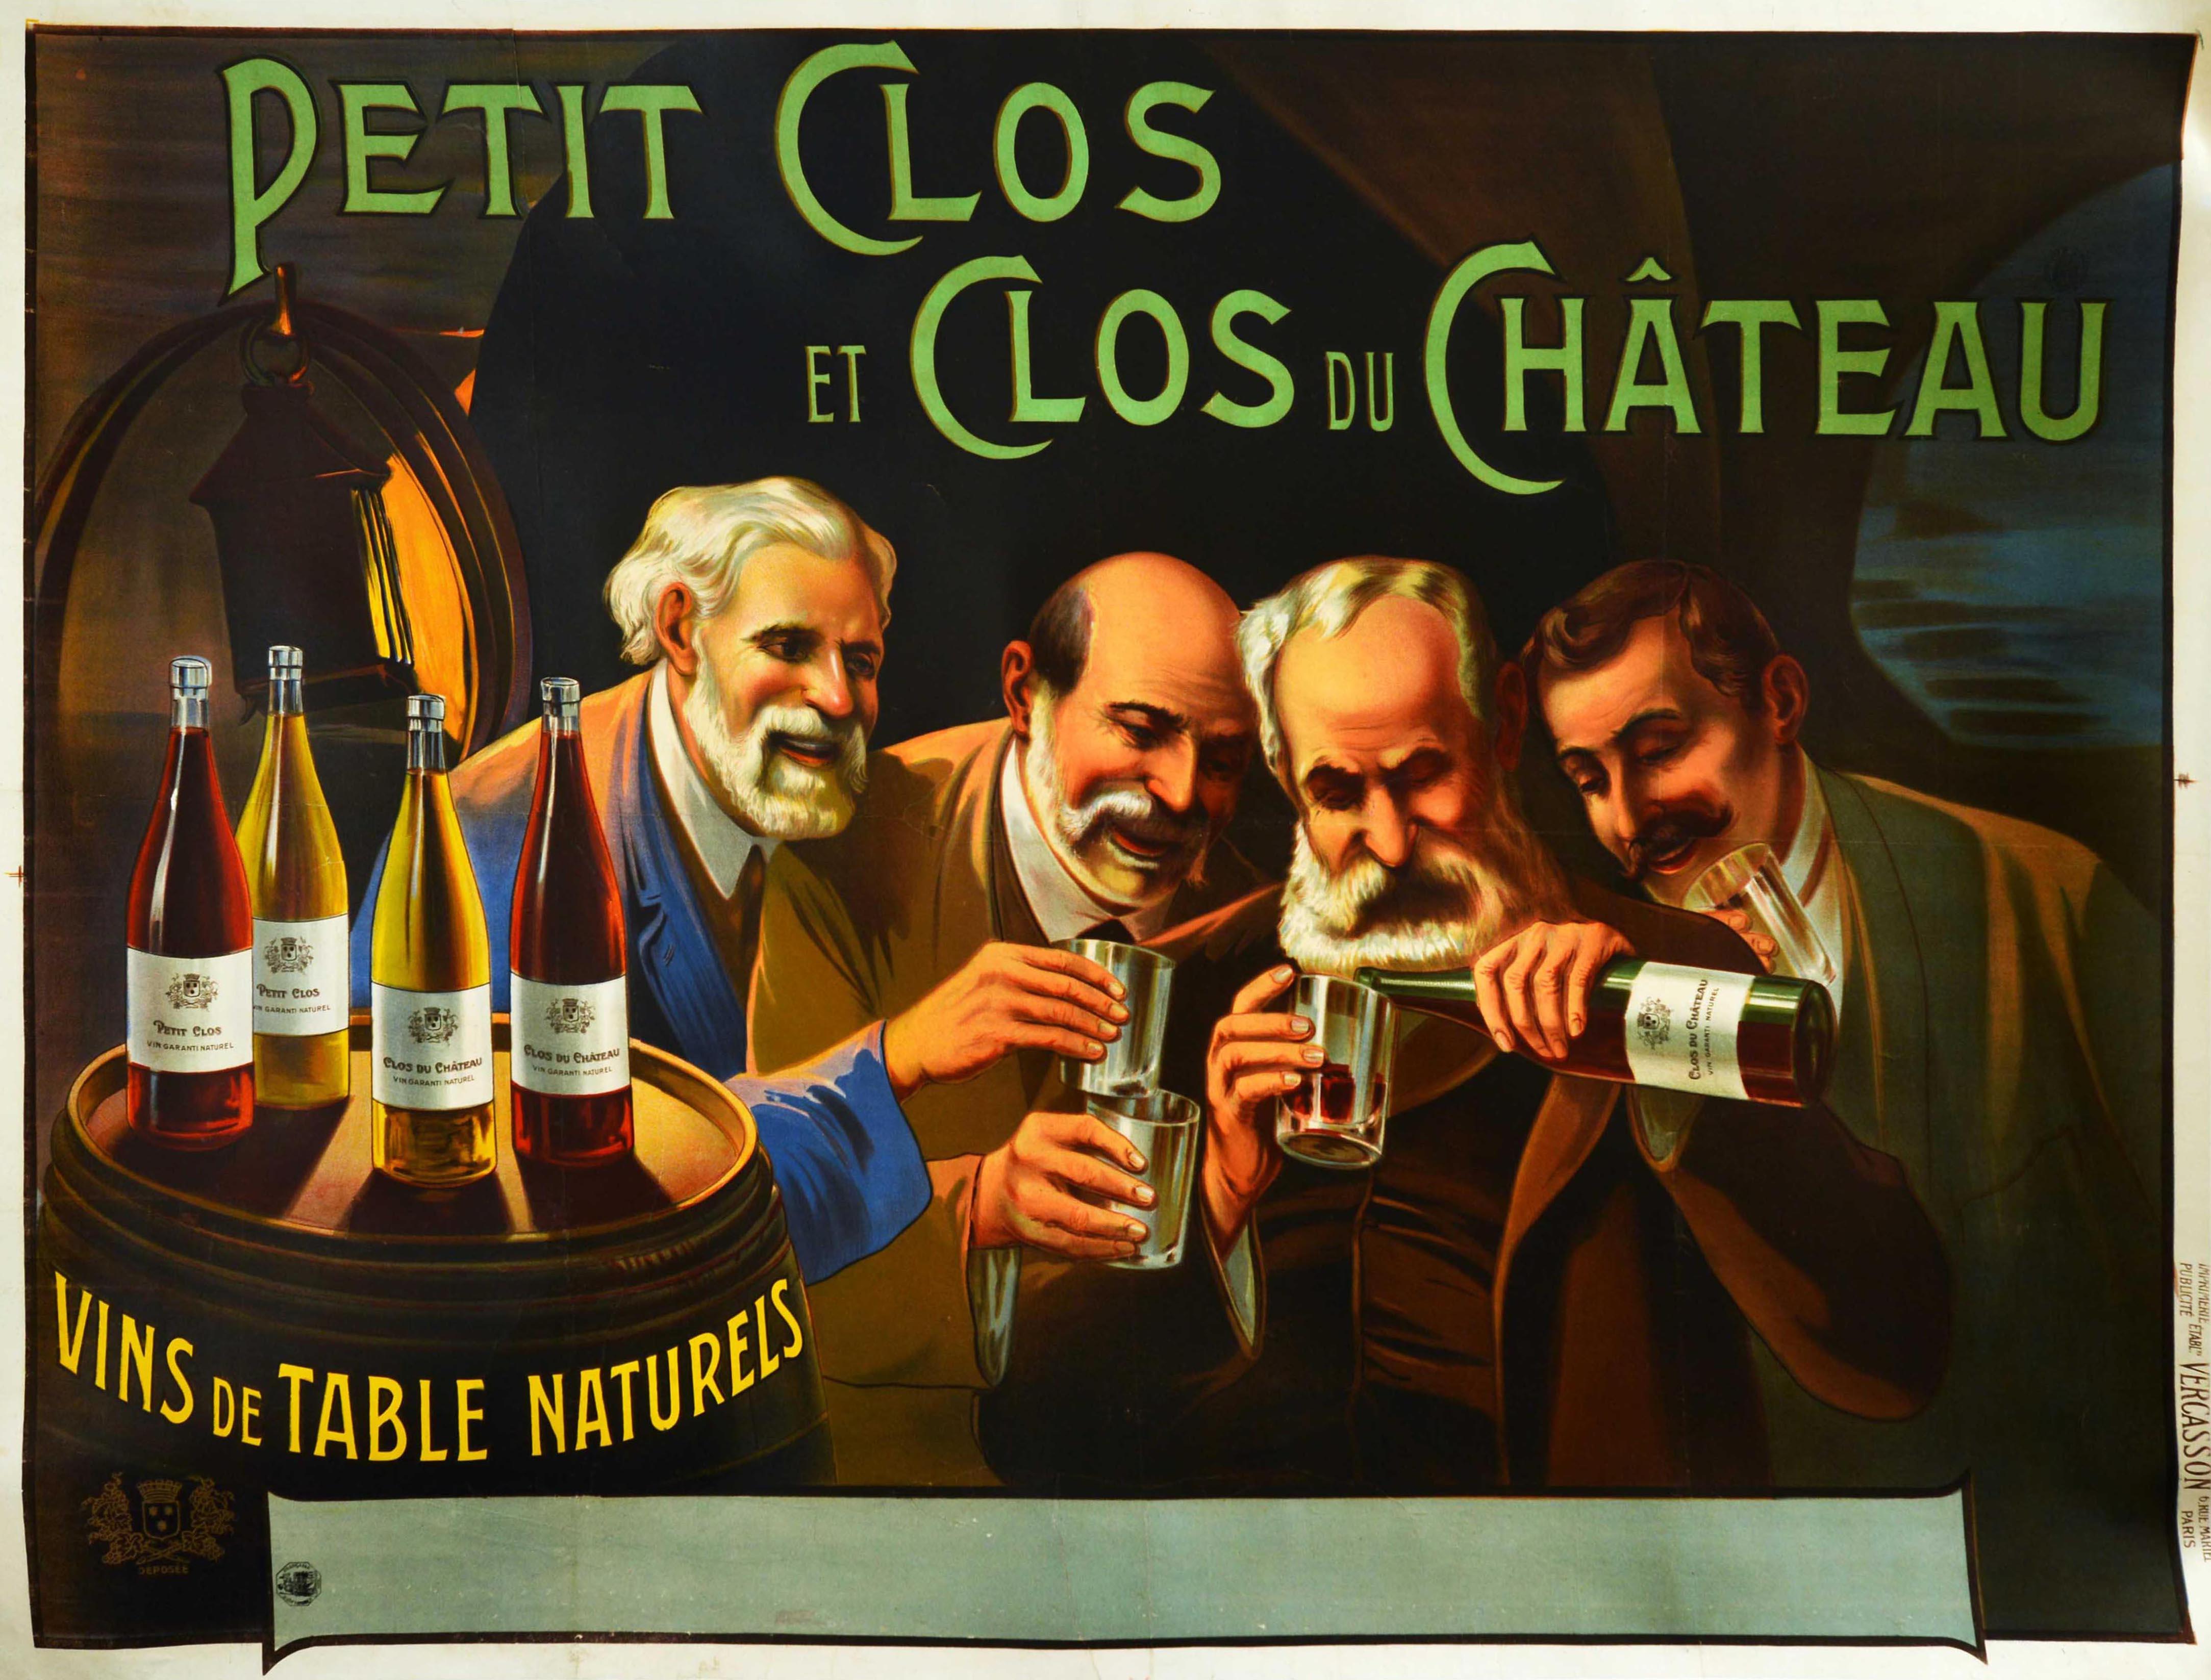 Affiche publicitaire originale et ancienne pour les vins Petit Clos et Clos du Château, présentant une illustration lumineuse et colorée de quatre hommes avec des moustaches et des barbes dans une cave à vin éclairée par une lanterne, souriant tout